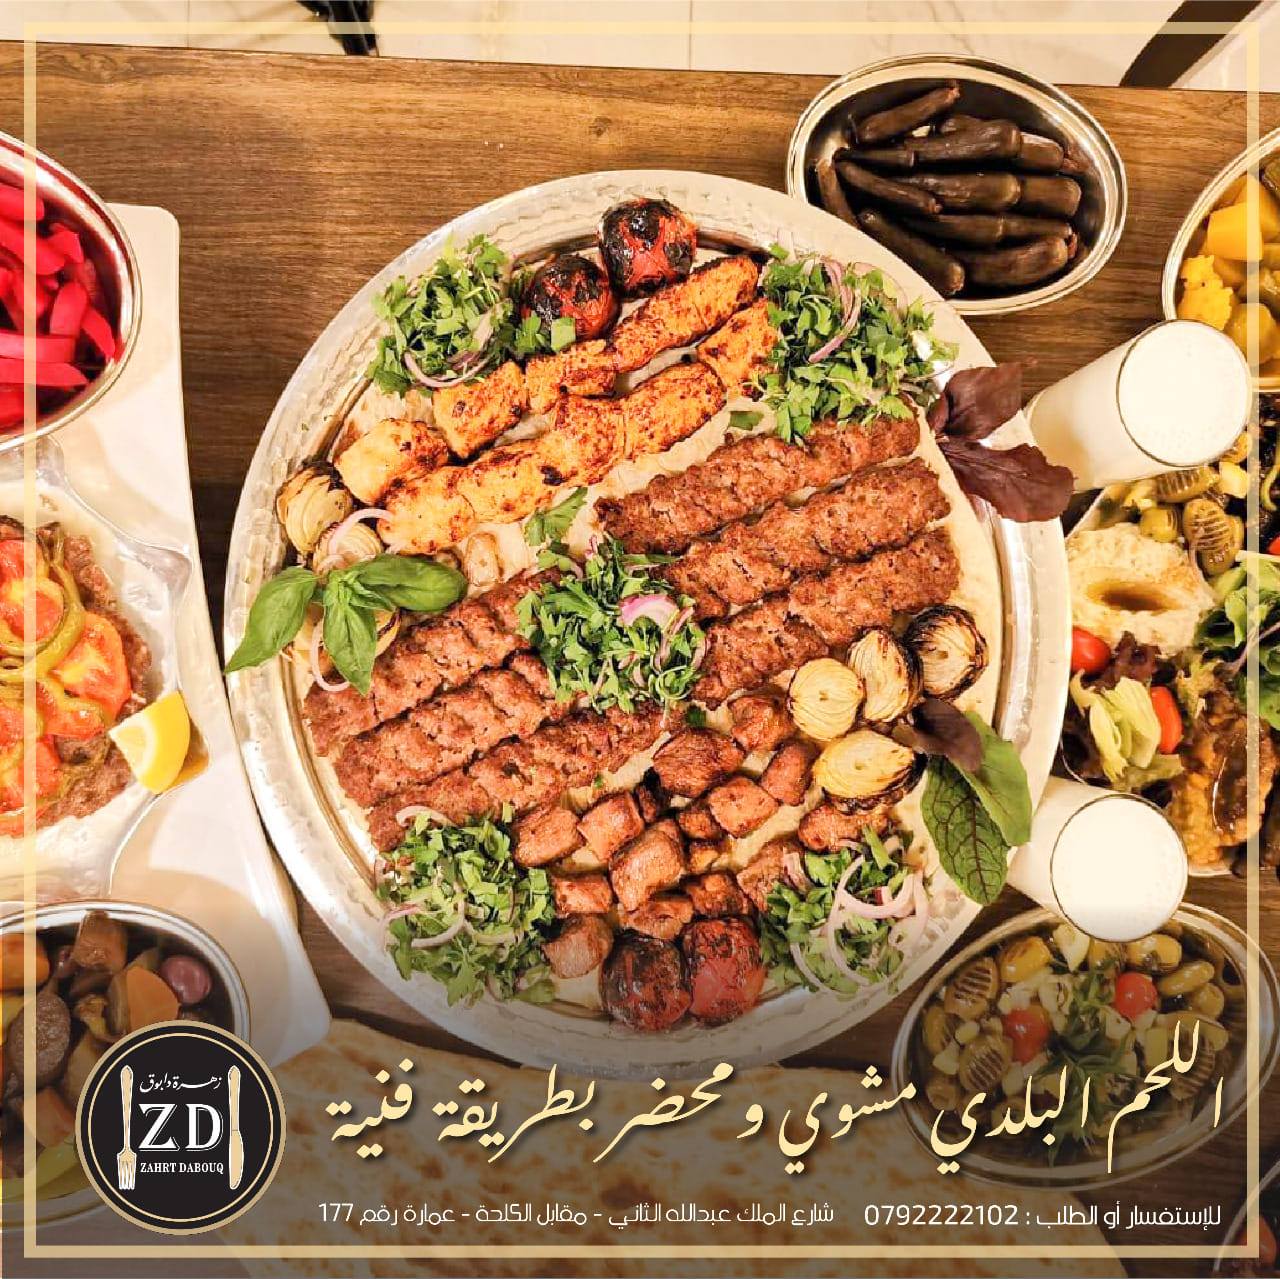  ملحمة ومشاوي زهرة دابوق - اطيب مطاعم المشاوي في عمان, الاردن